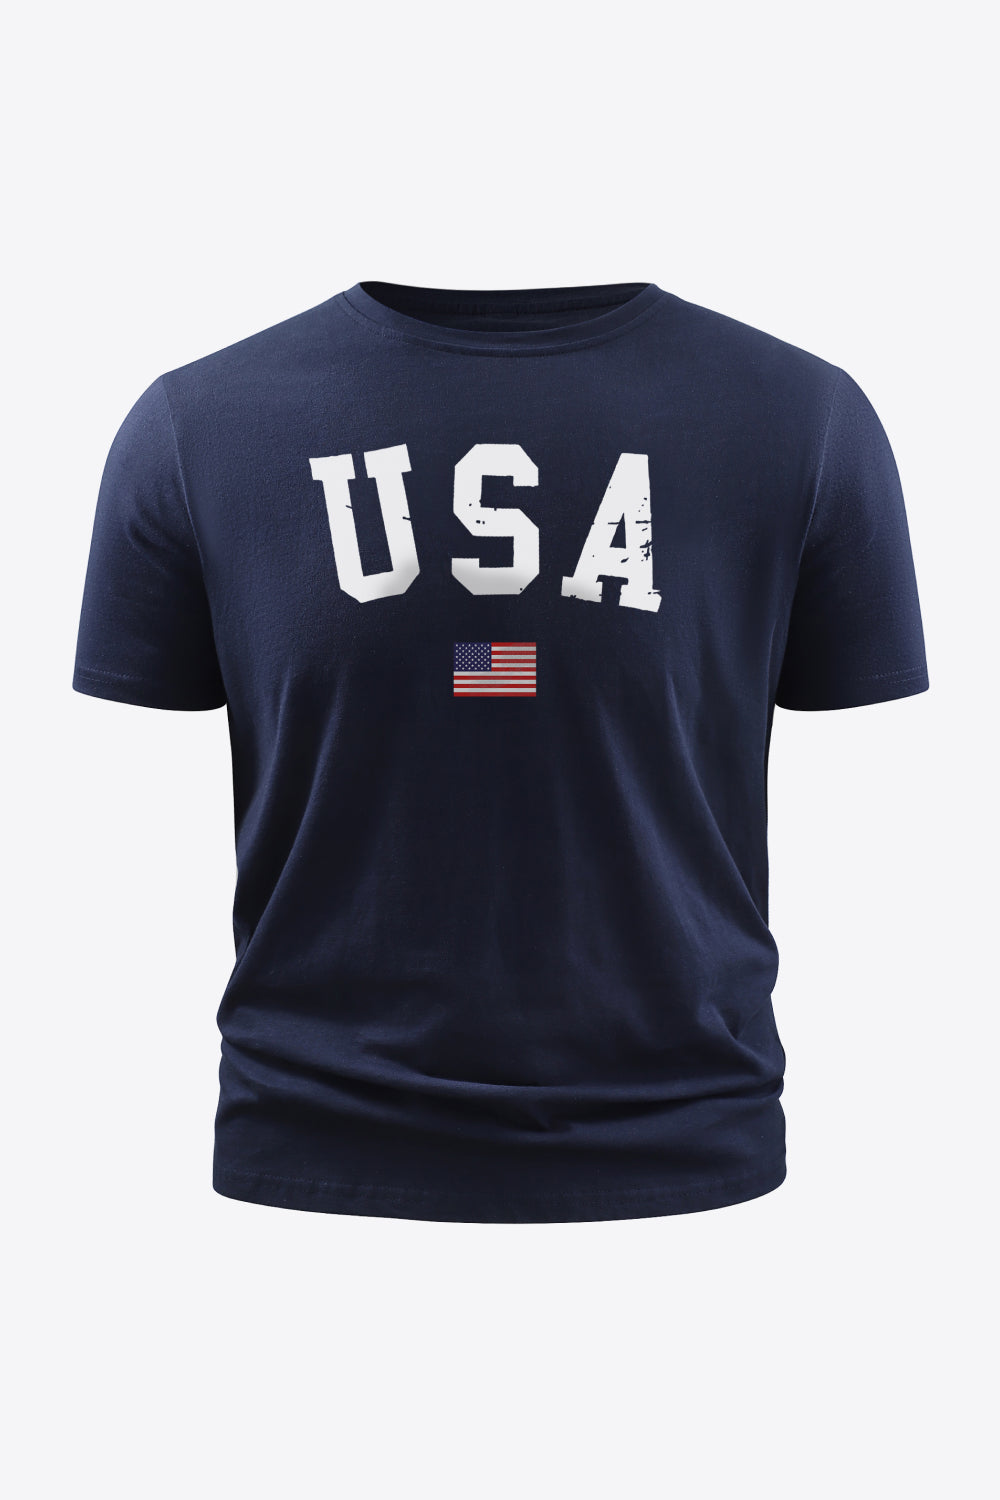 USA Flag Graphic Tee Shirt